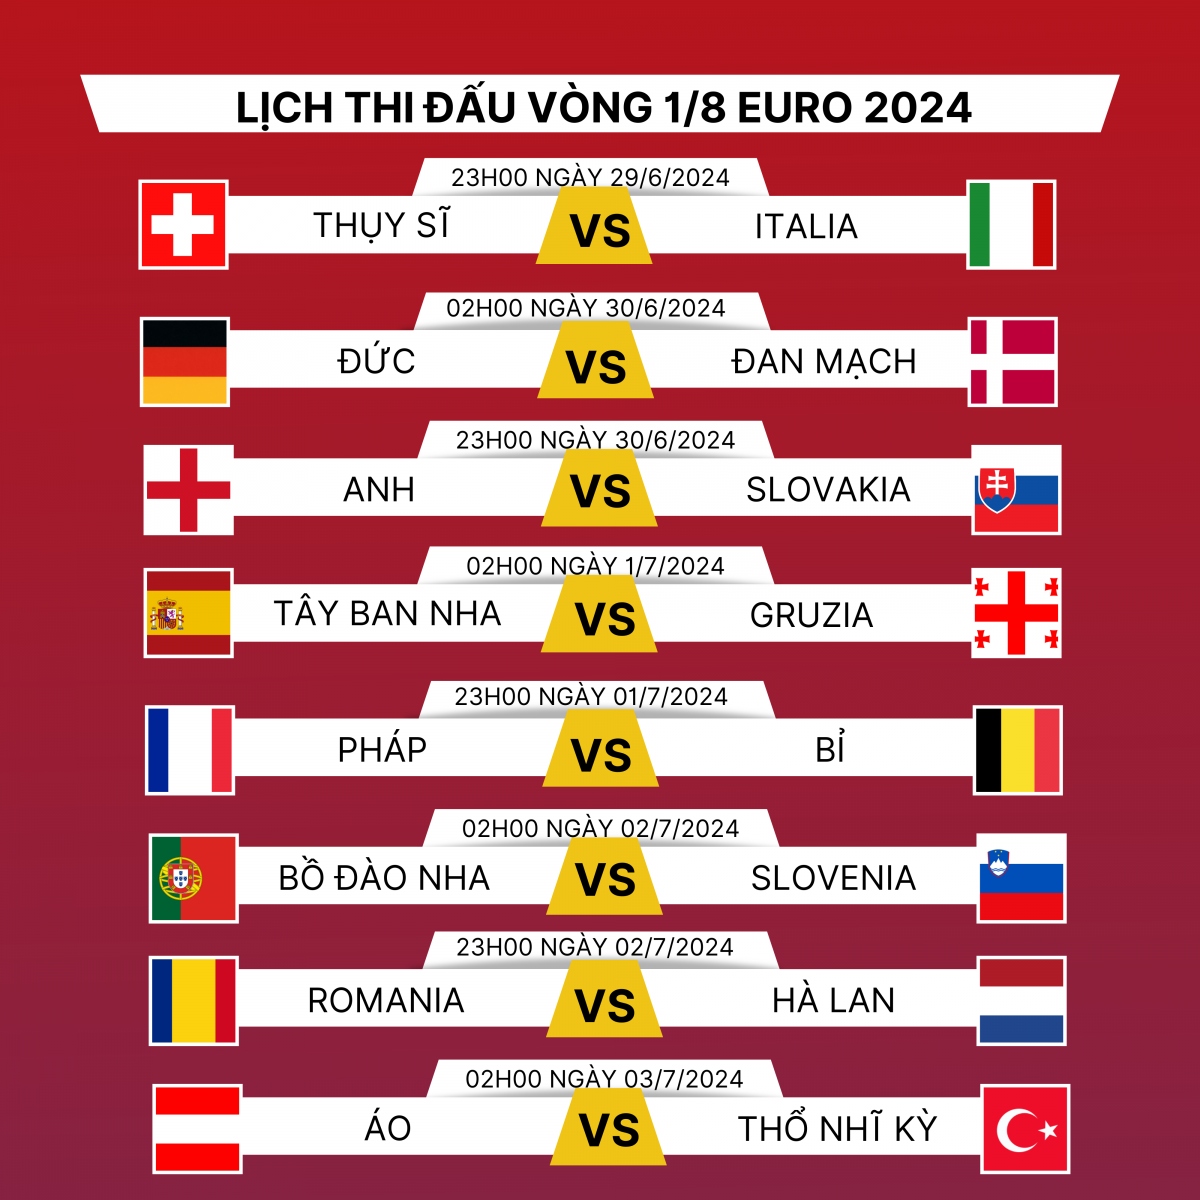 Lịch thi đấu vòng 1/8 EURO 2024: Kịch tính nhánh đấu tử thần